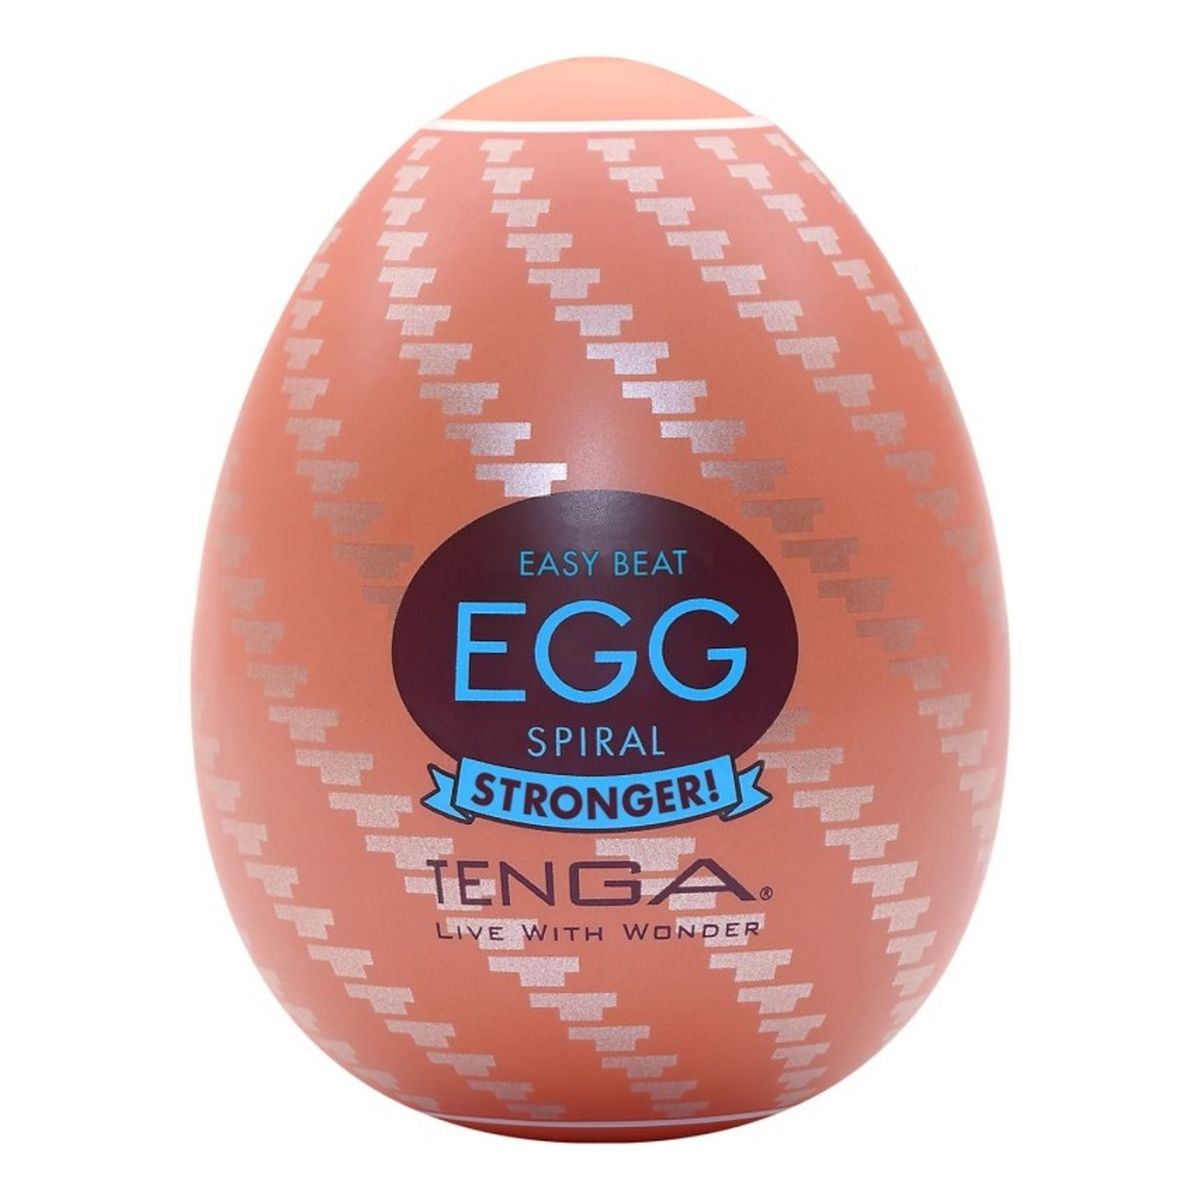 Tenga Easy beat egg spiral strober jednorazowy masturbator w kształcie jajka